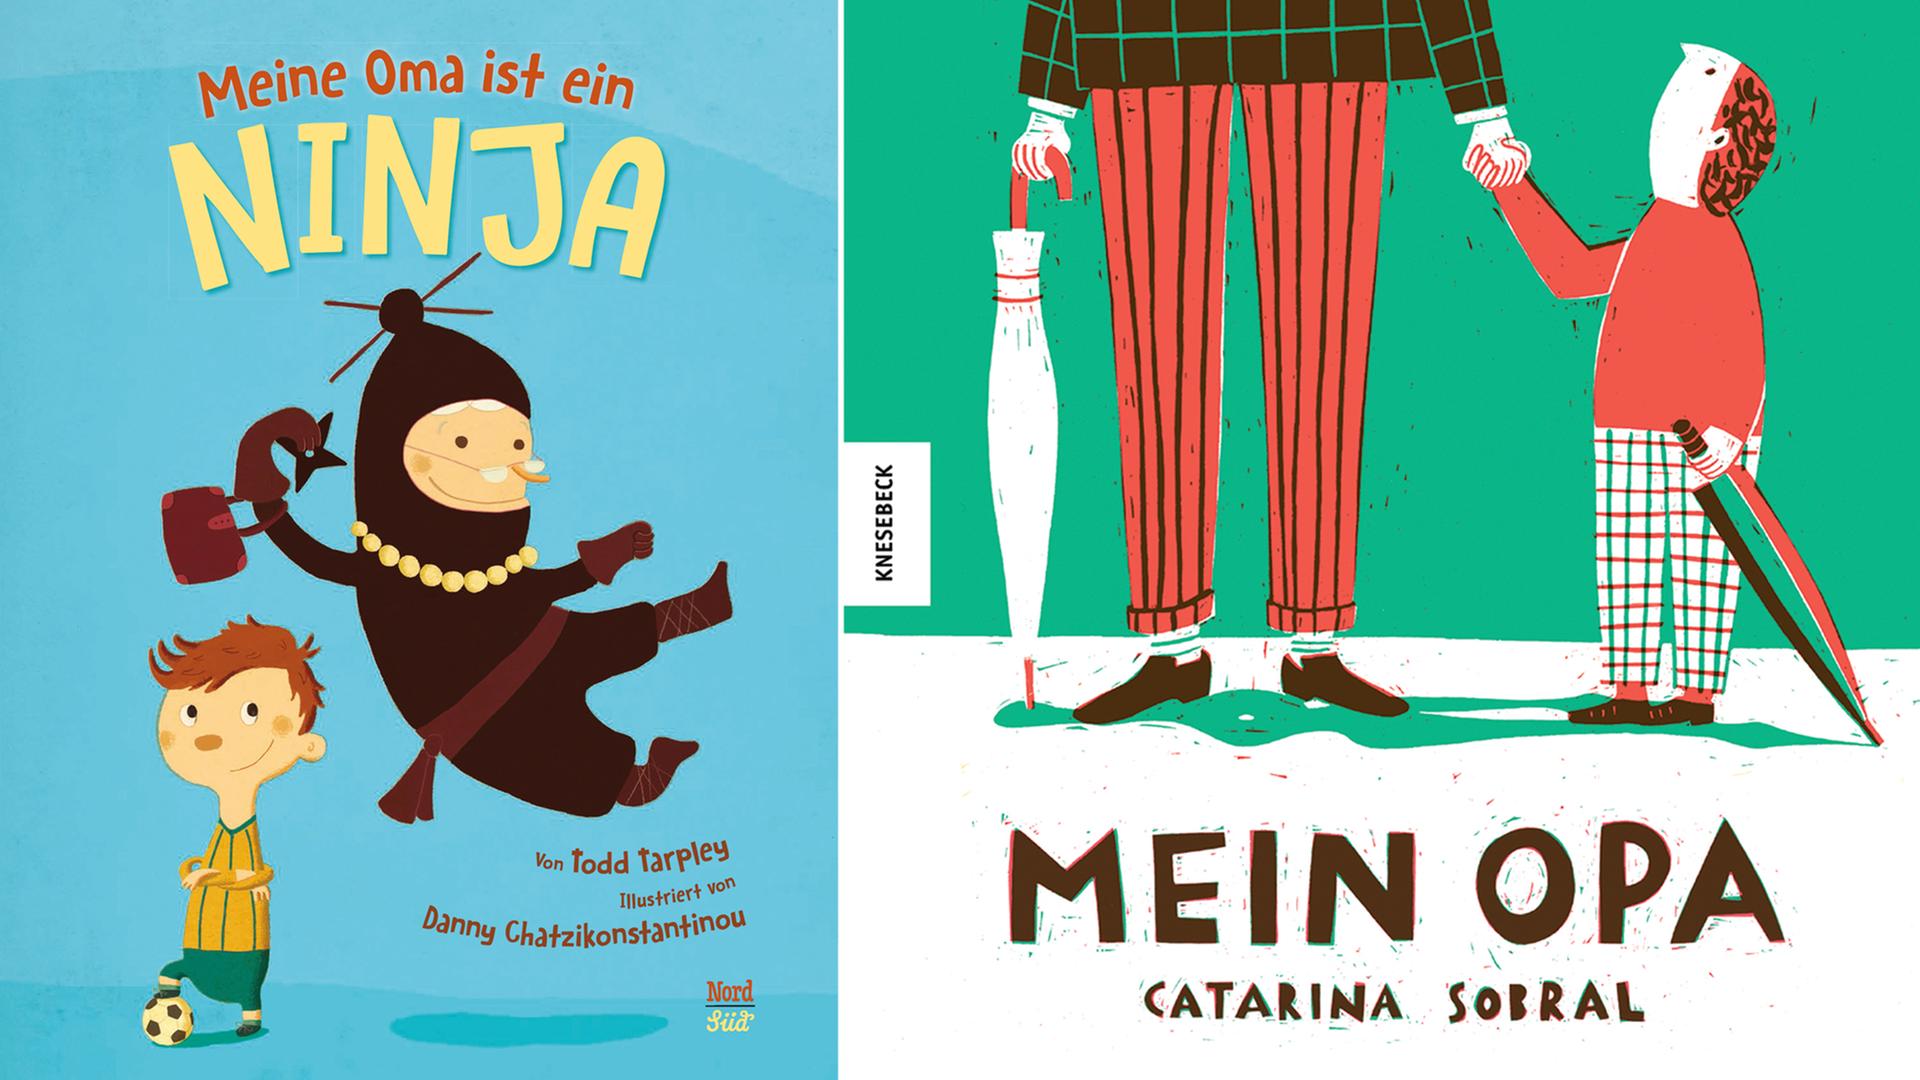 Buchcover: "Meine Oma ist ein Ninja" von Todd Tarpley und "Mein Opa" von Catarina Sobral